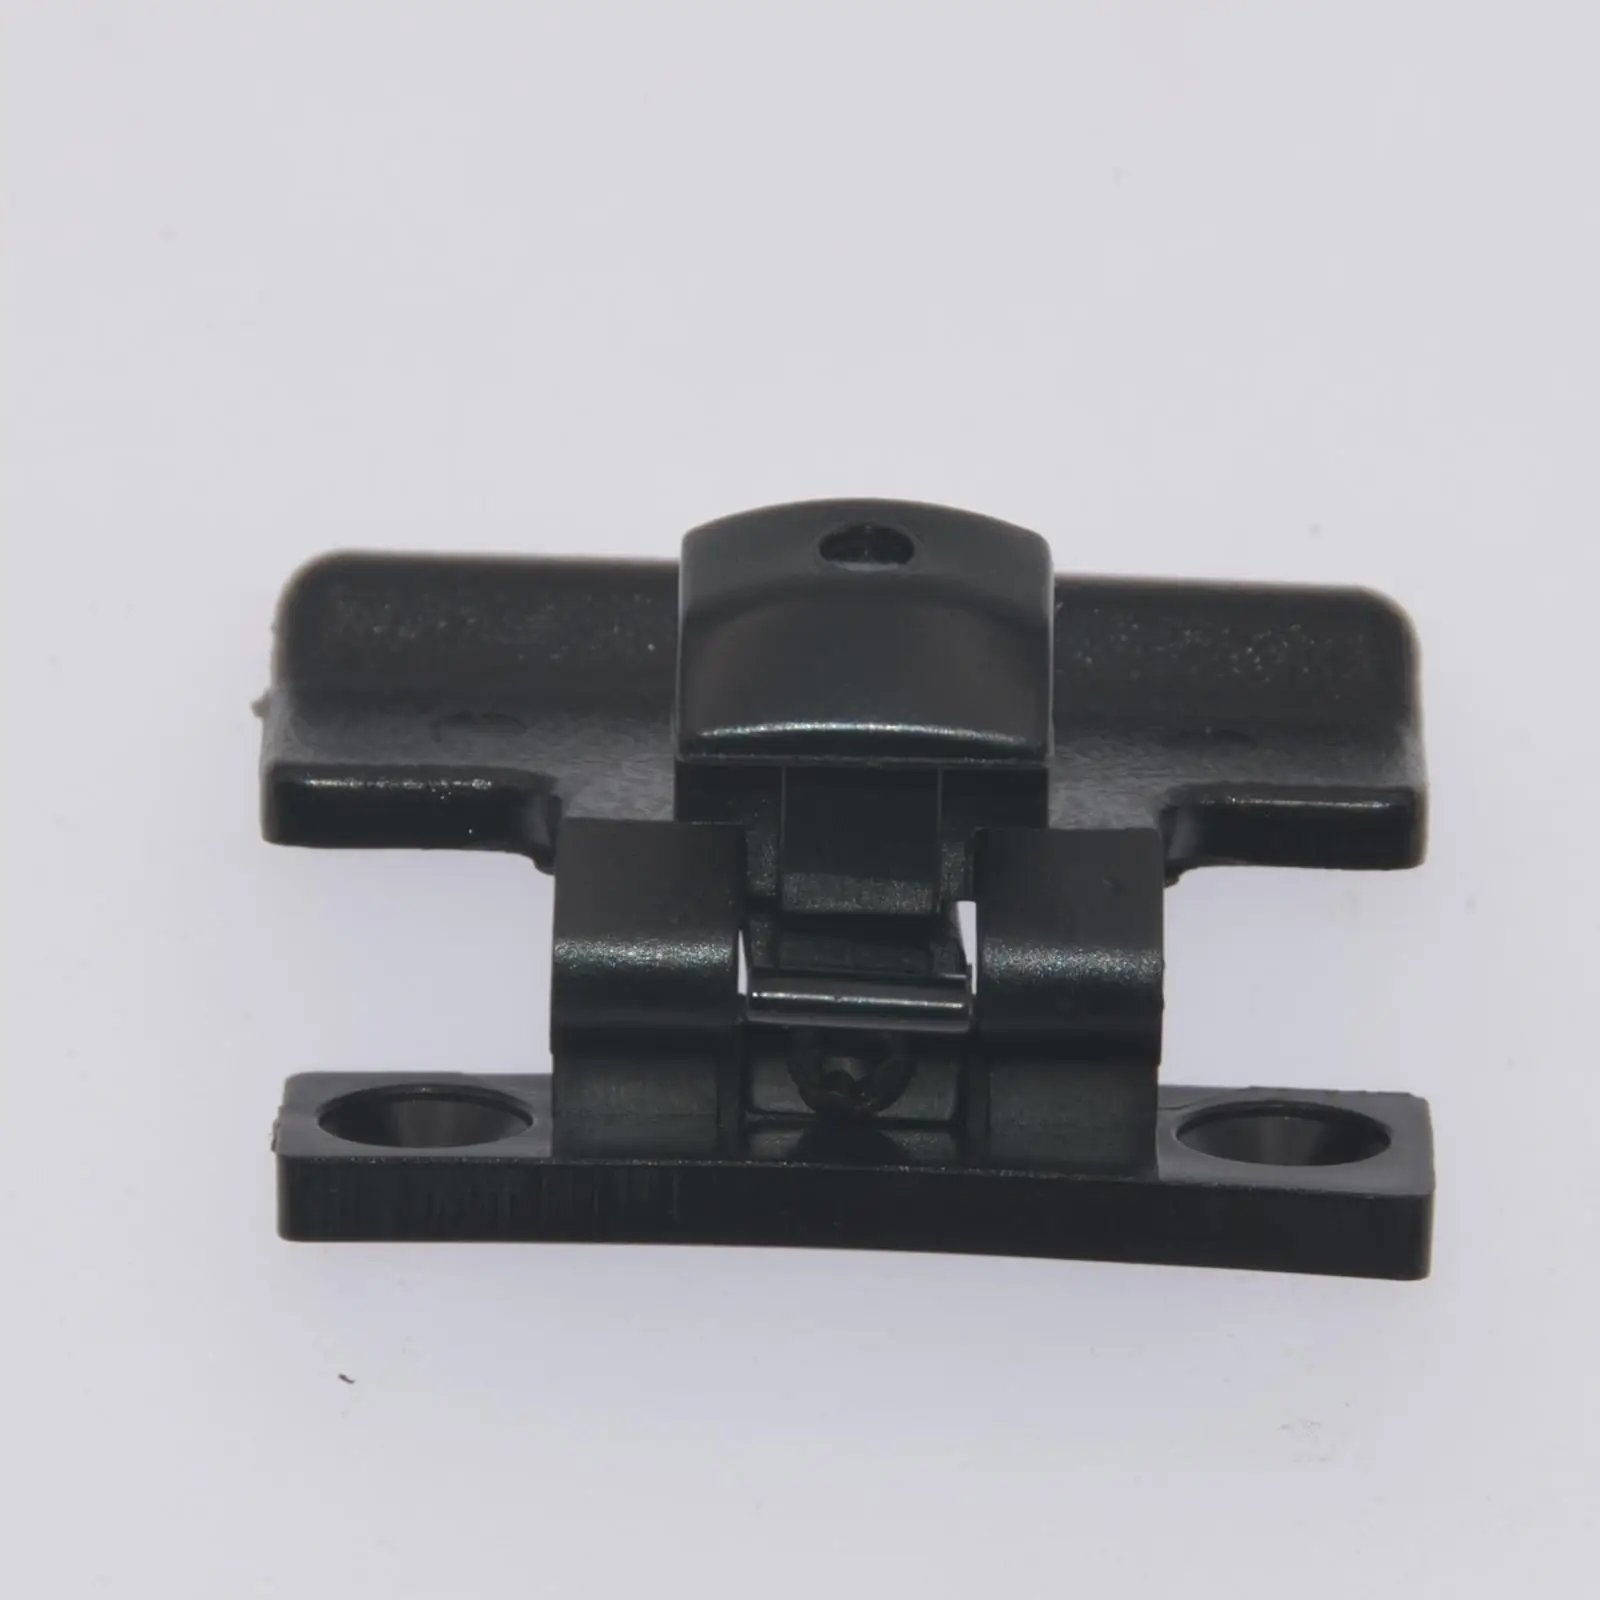 Upper Armrest Lid Latch Replacement Automotive Central Storage Box Lid clip for Mitsubishi Pajero V75 V77 V73 V97